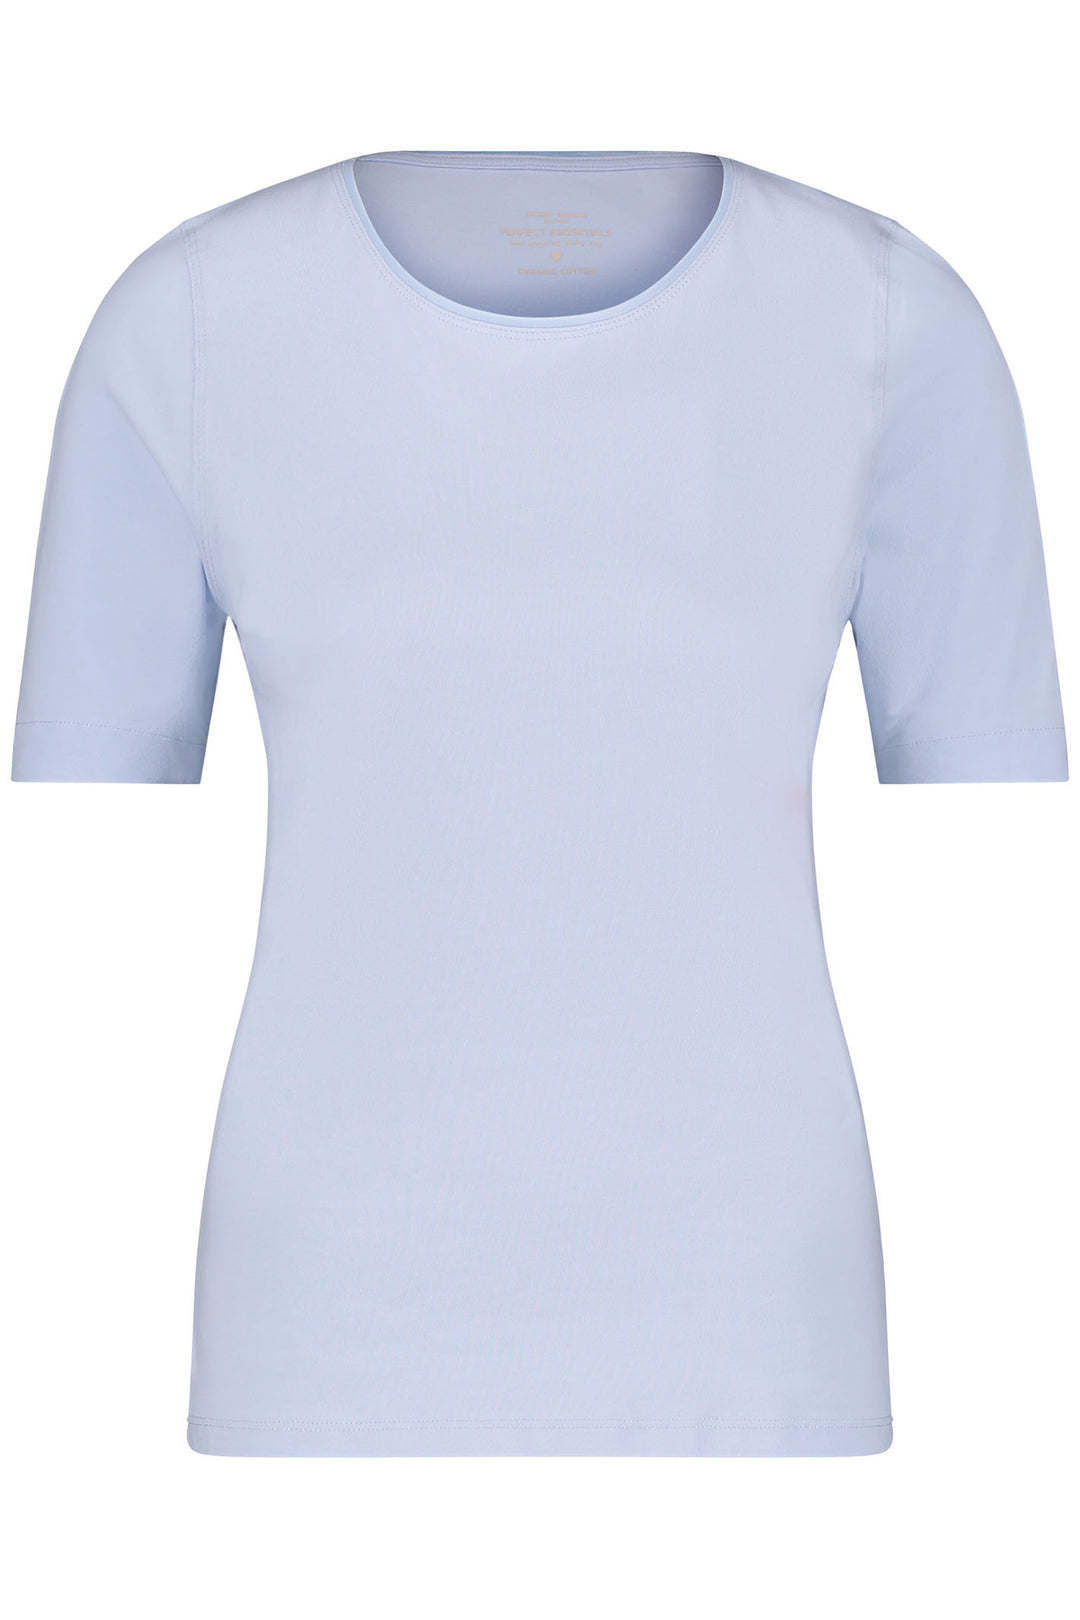 Gerry Weber 977048-44000 Light Blue Round Neck T-Shirt - Dotique Chesterfield